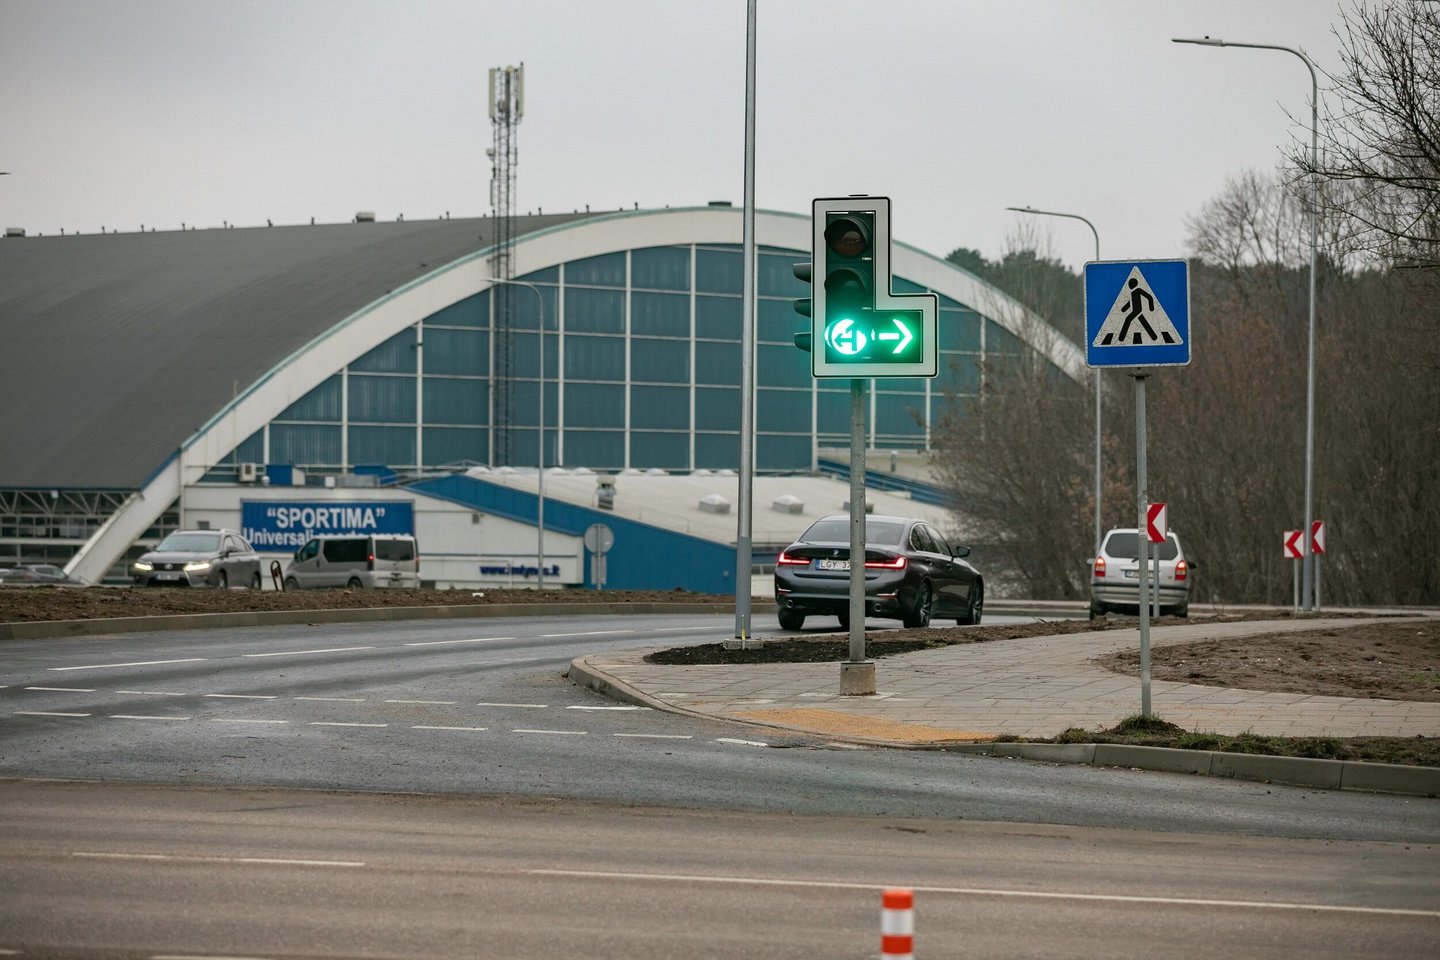 Sostinėje paskutinėmis gruodžio dienomis baigti šviesoforų lentelių su žaliomis rodyklėmis nuėmimo darbai – Vilniuje jų nebeliko.